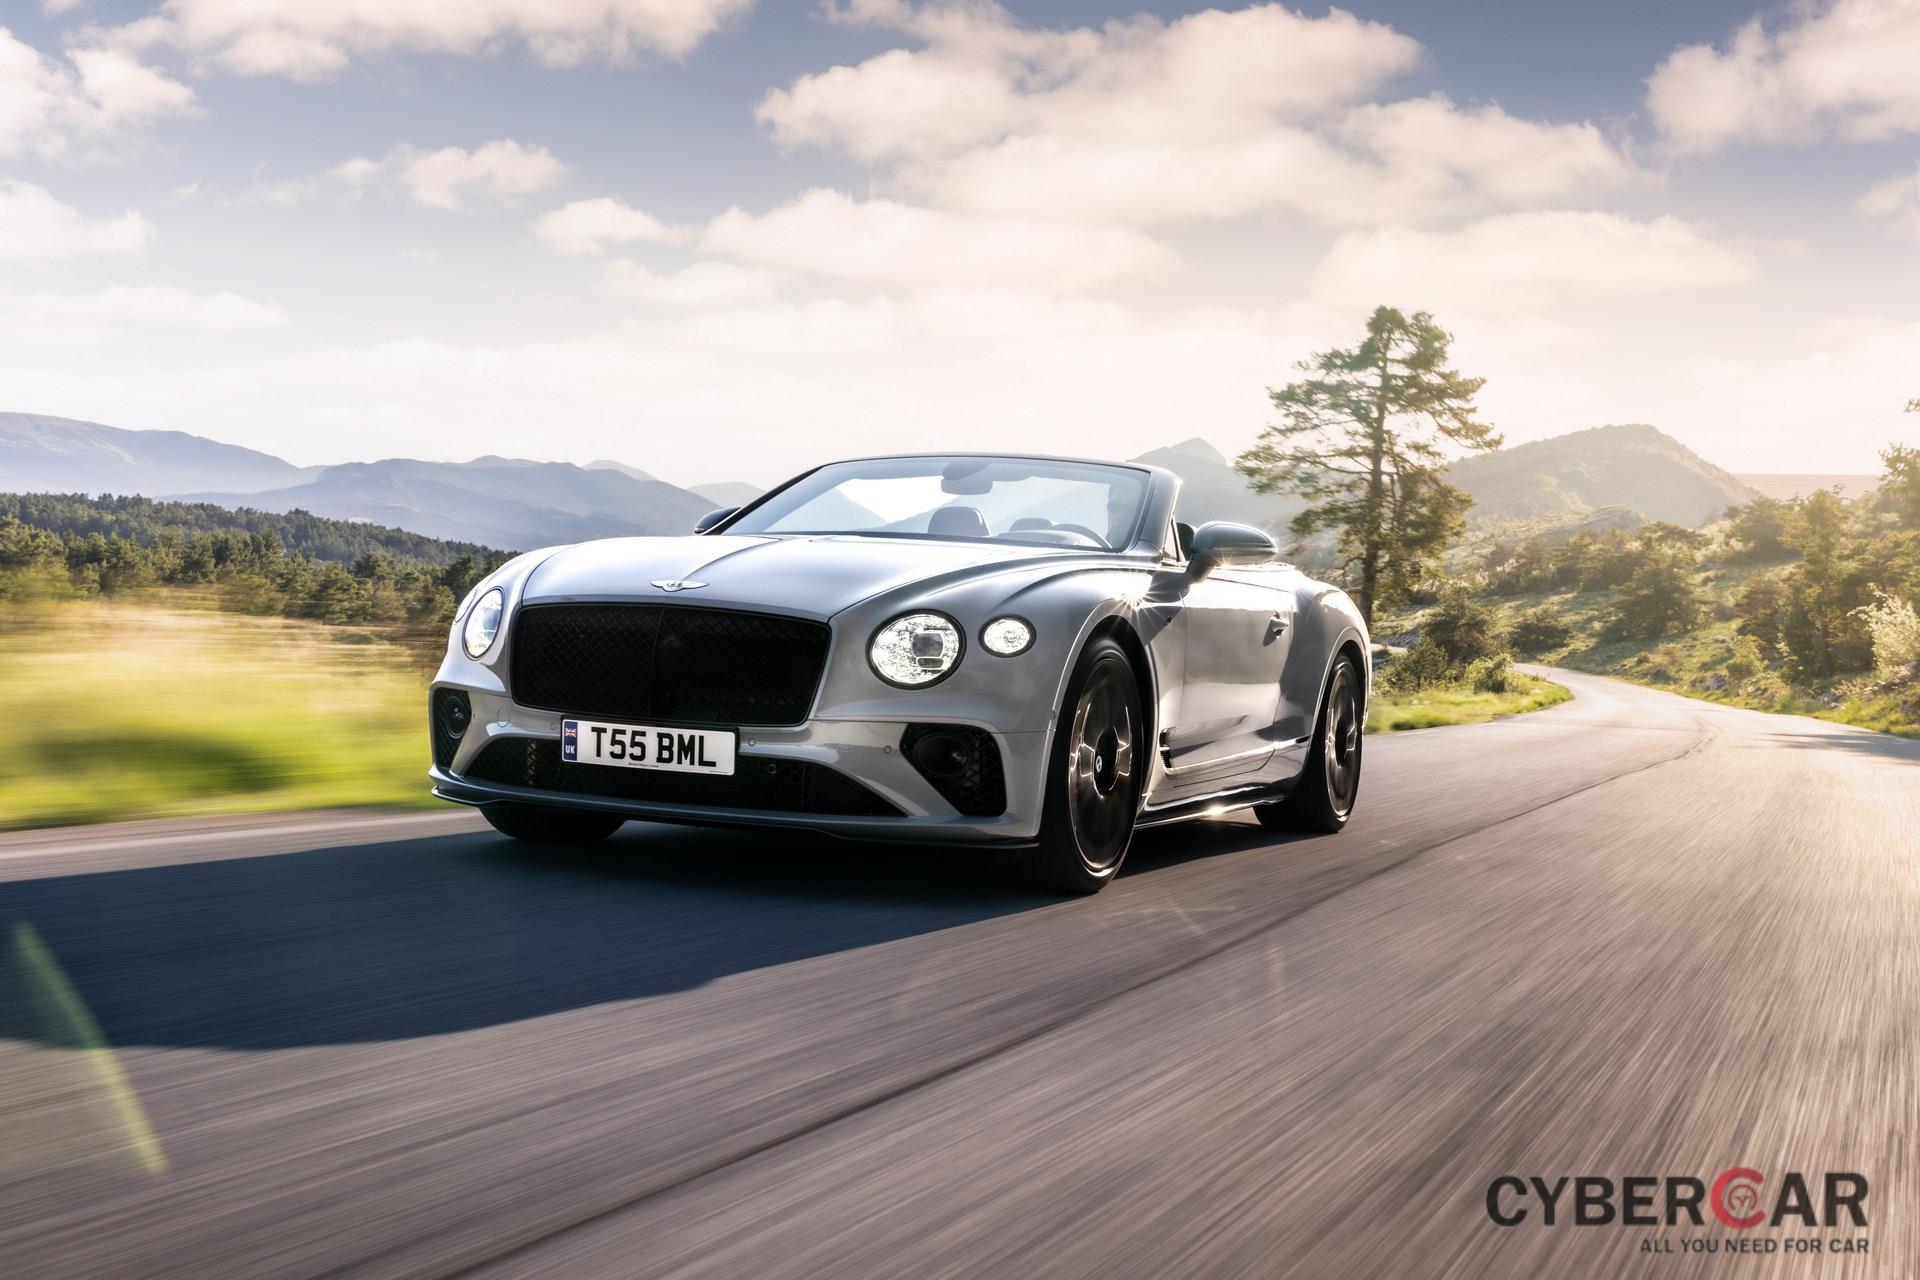 Bentley gioi thieu phien ban the thao cho Continental GT va GTC anh 1